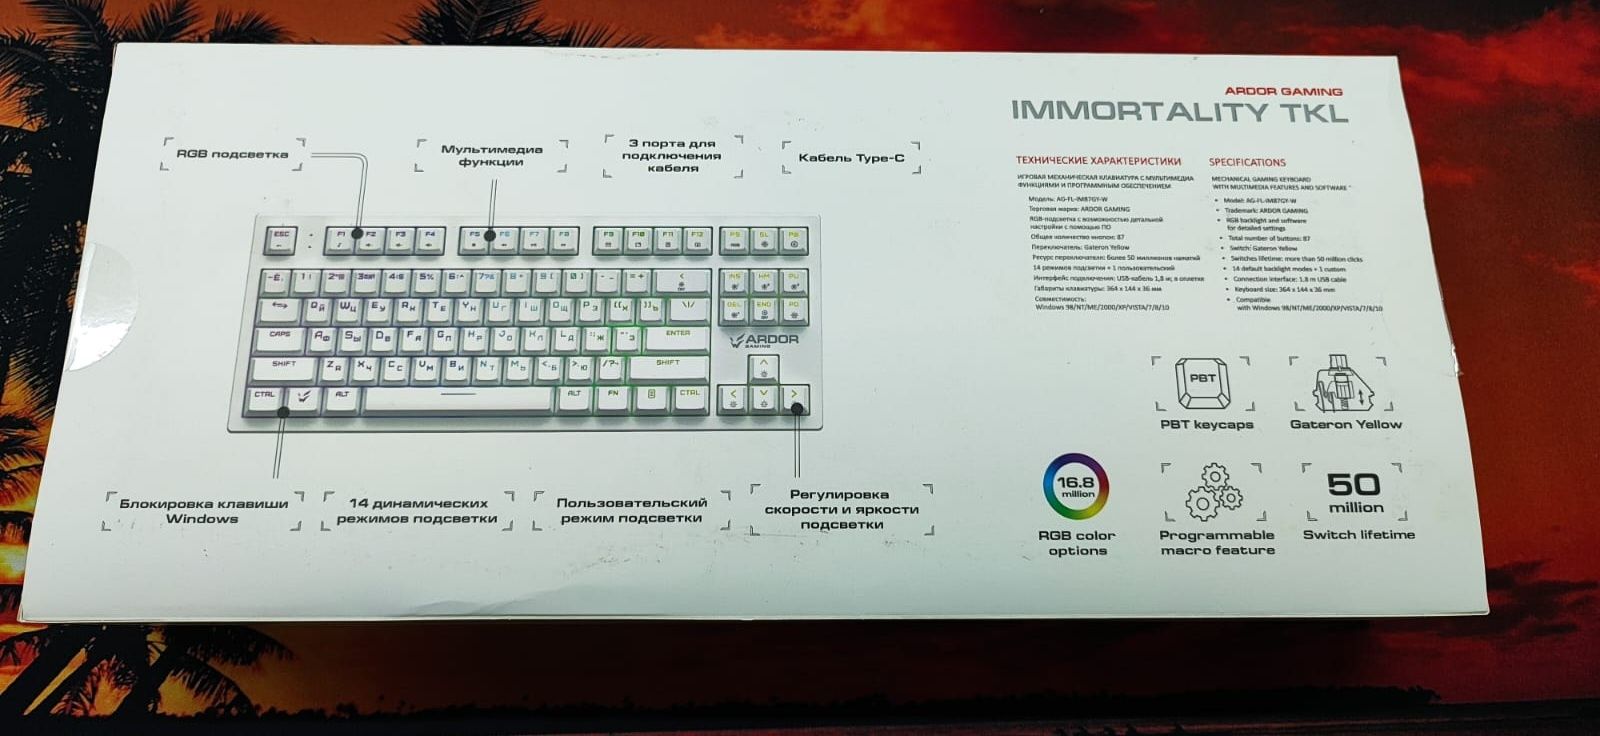 Игровая проводная клавиатура:ardor gaming lmmortality tkl